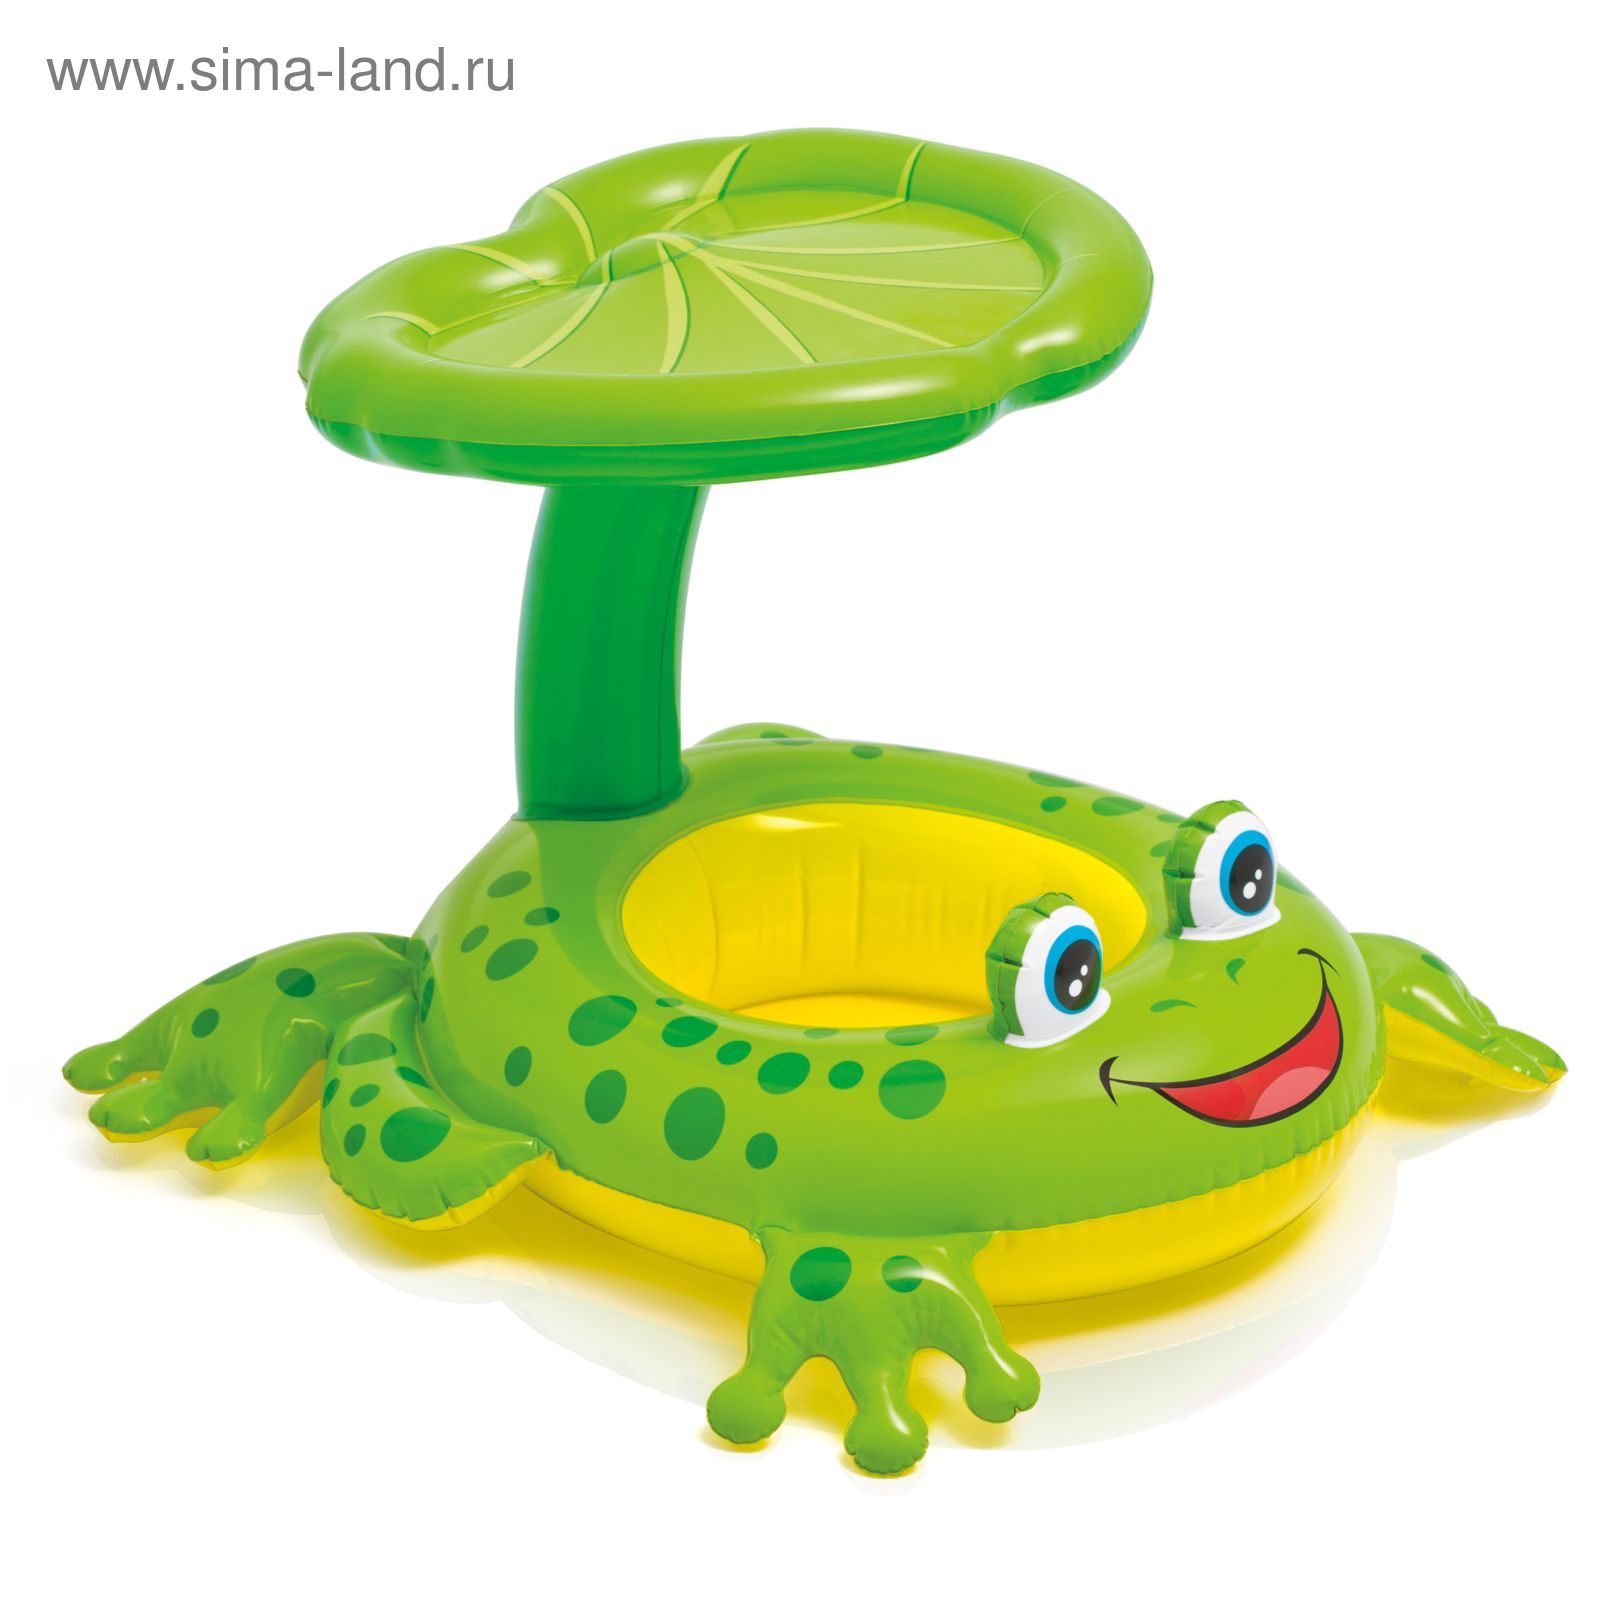 Надувная игрушка для плавания "Лягушка", от 1 года